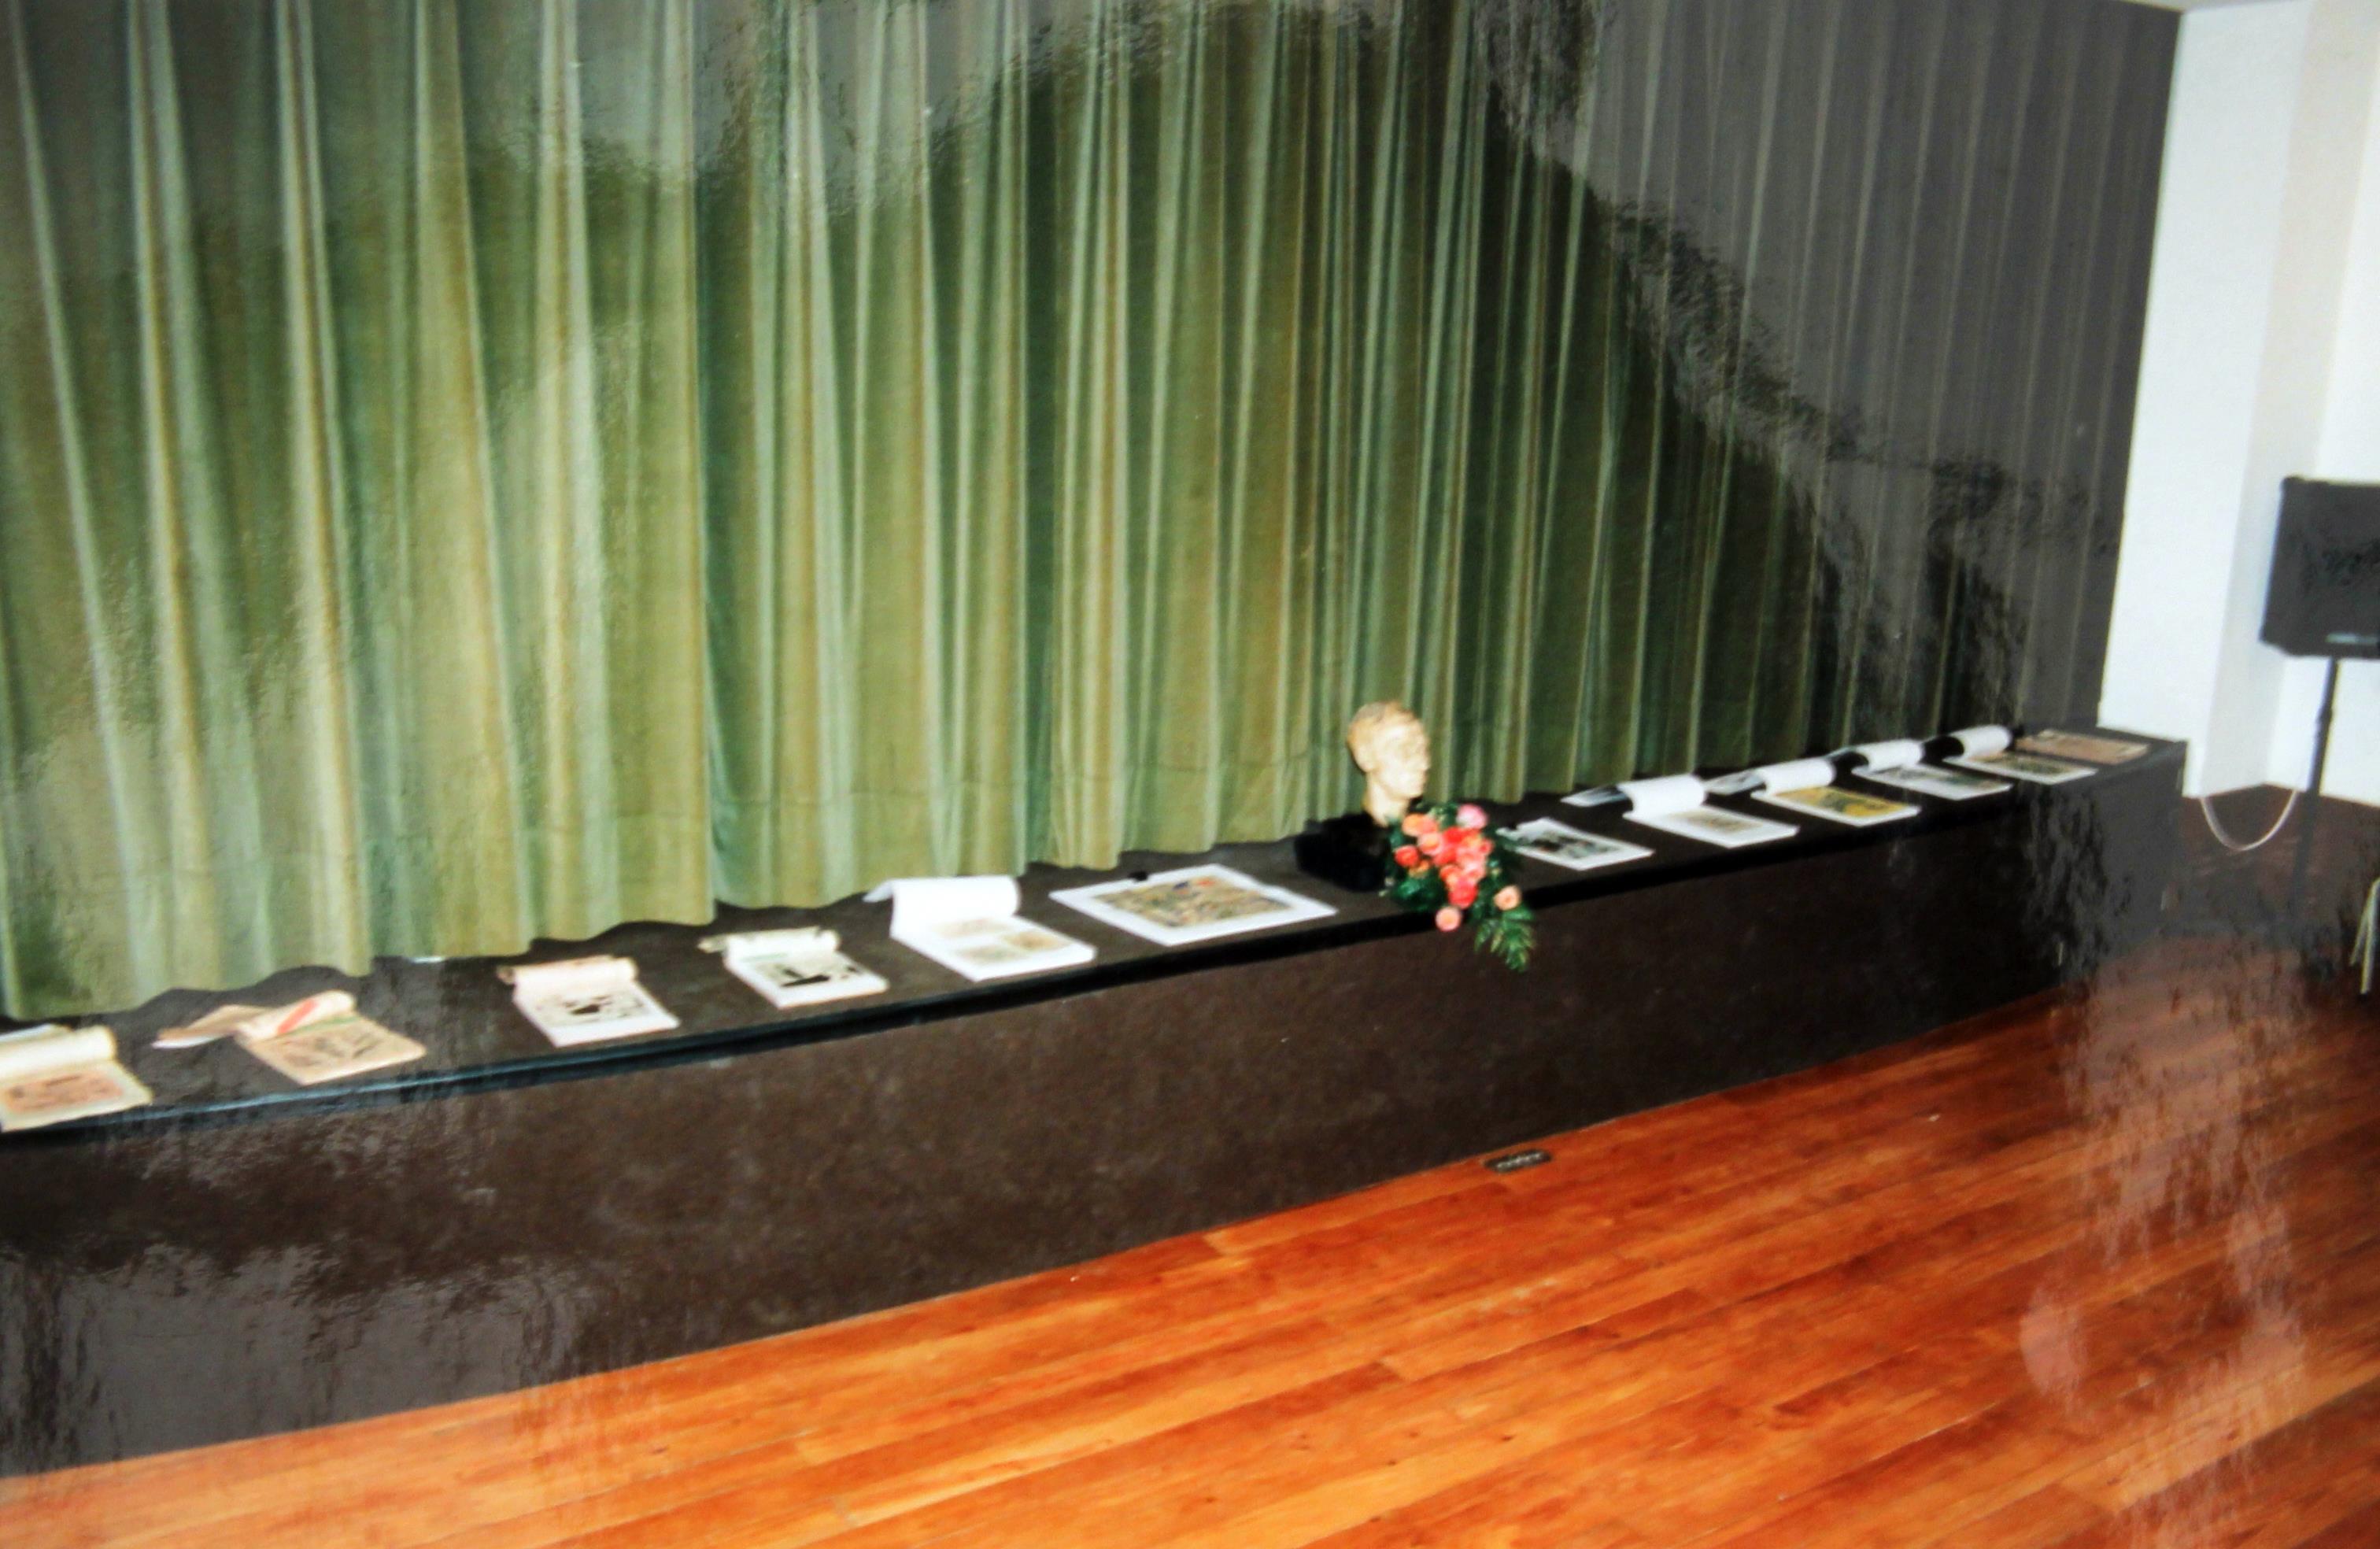 1ª Exposição "Documental" póstuma : "Uma Obra - Cruz Caldas" : vista geral da mesa de honra